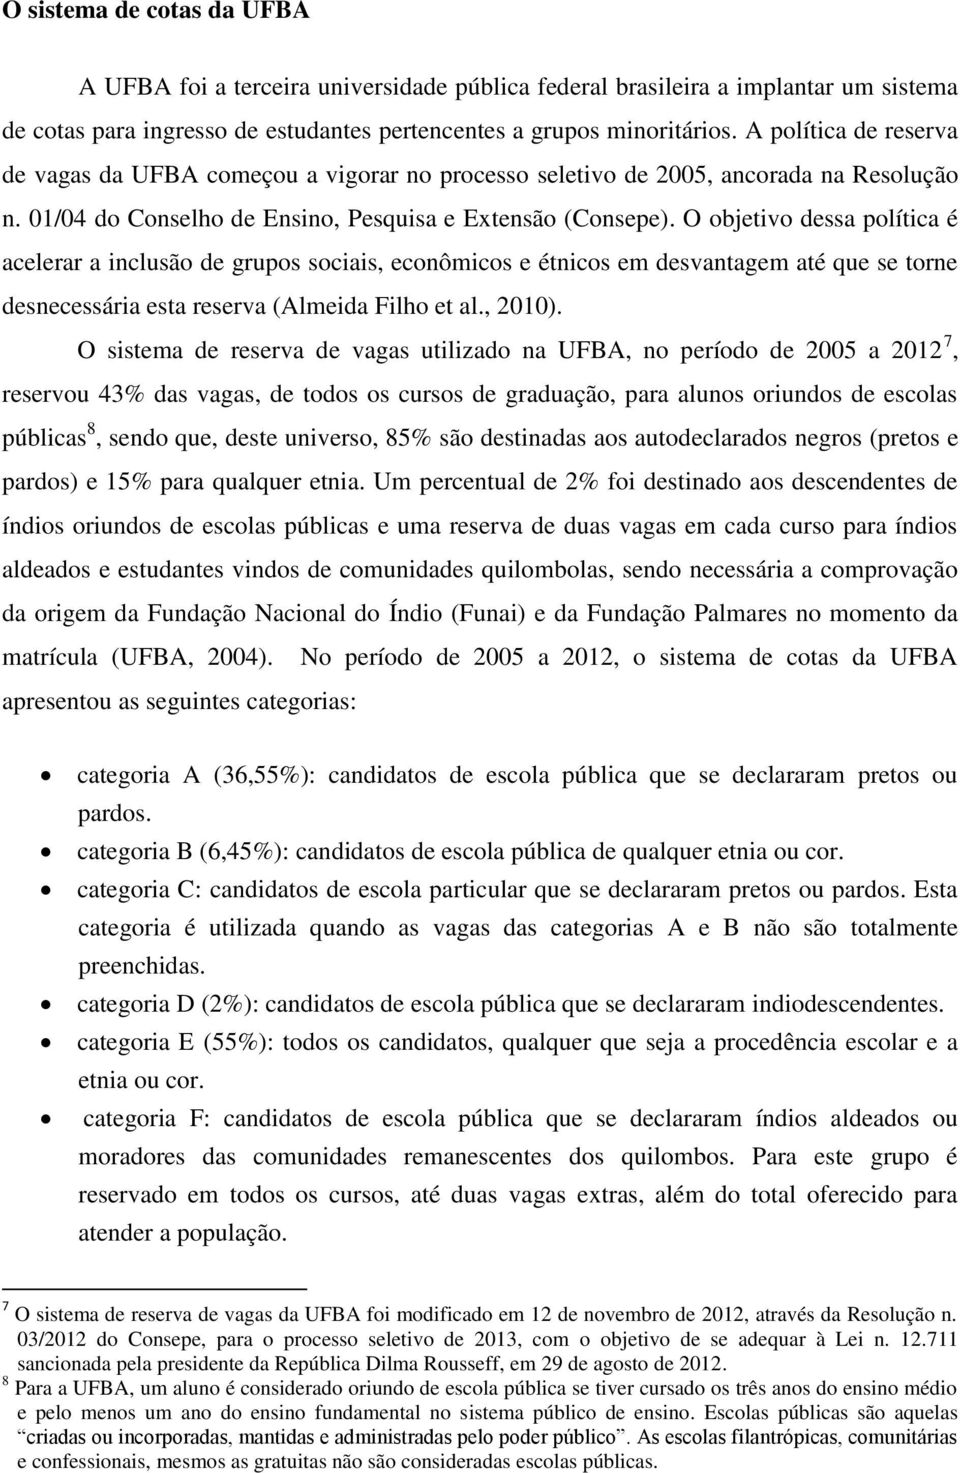 O objetivo dessa política é acelerar a inclusão de grupos sociais, econômicos e étnicos em desvantagem até que se torne desnecessária esta reserva (Almeida Filho et al., 2010).